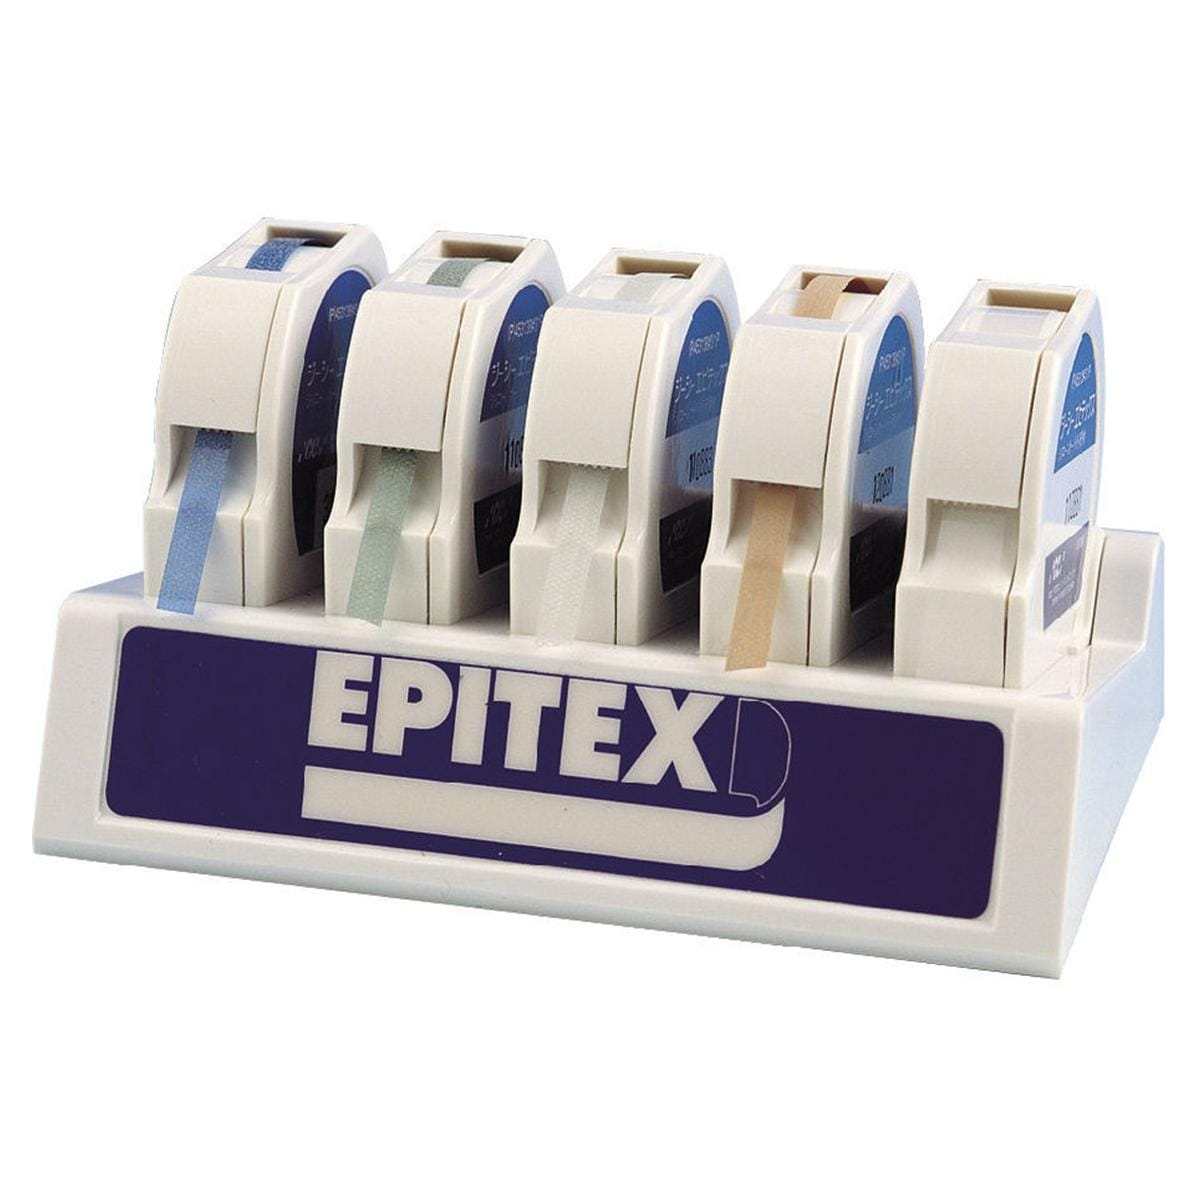 EPITEX EXTRA-SOTTILI - Grana fine/colore grigio